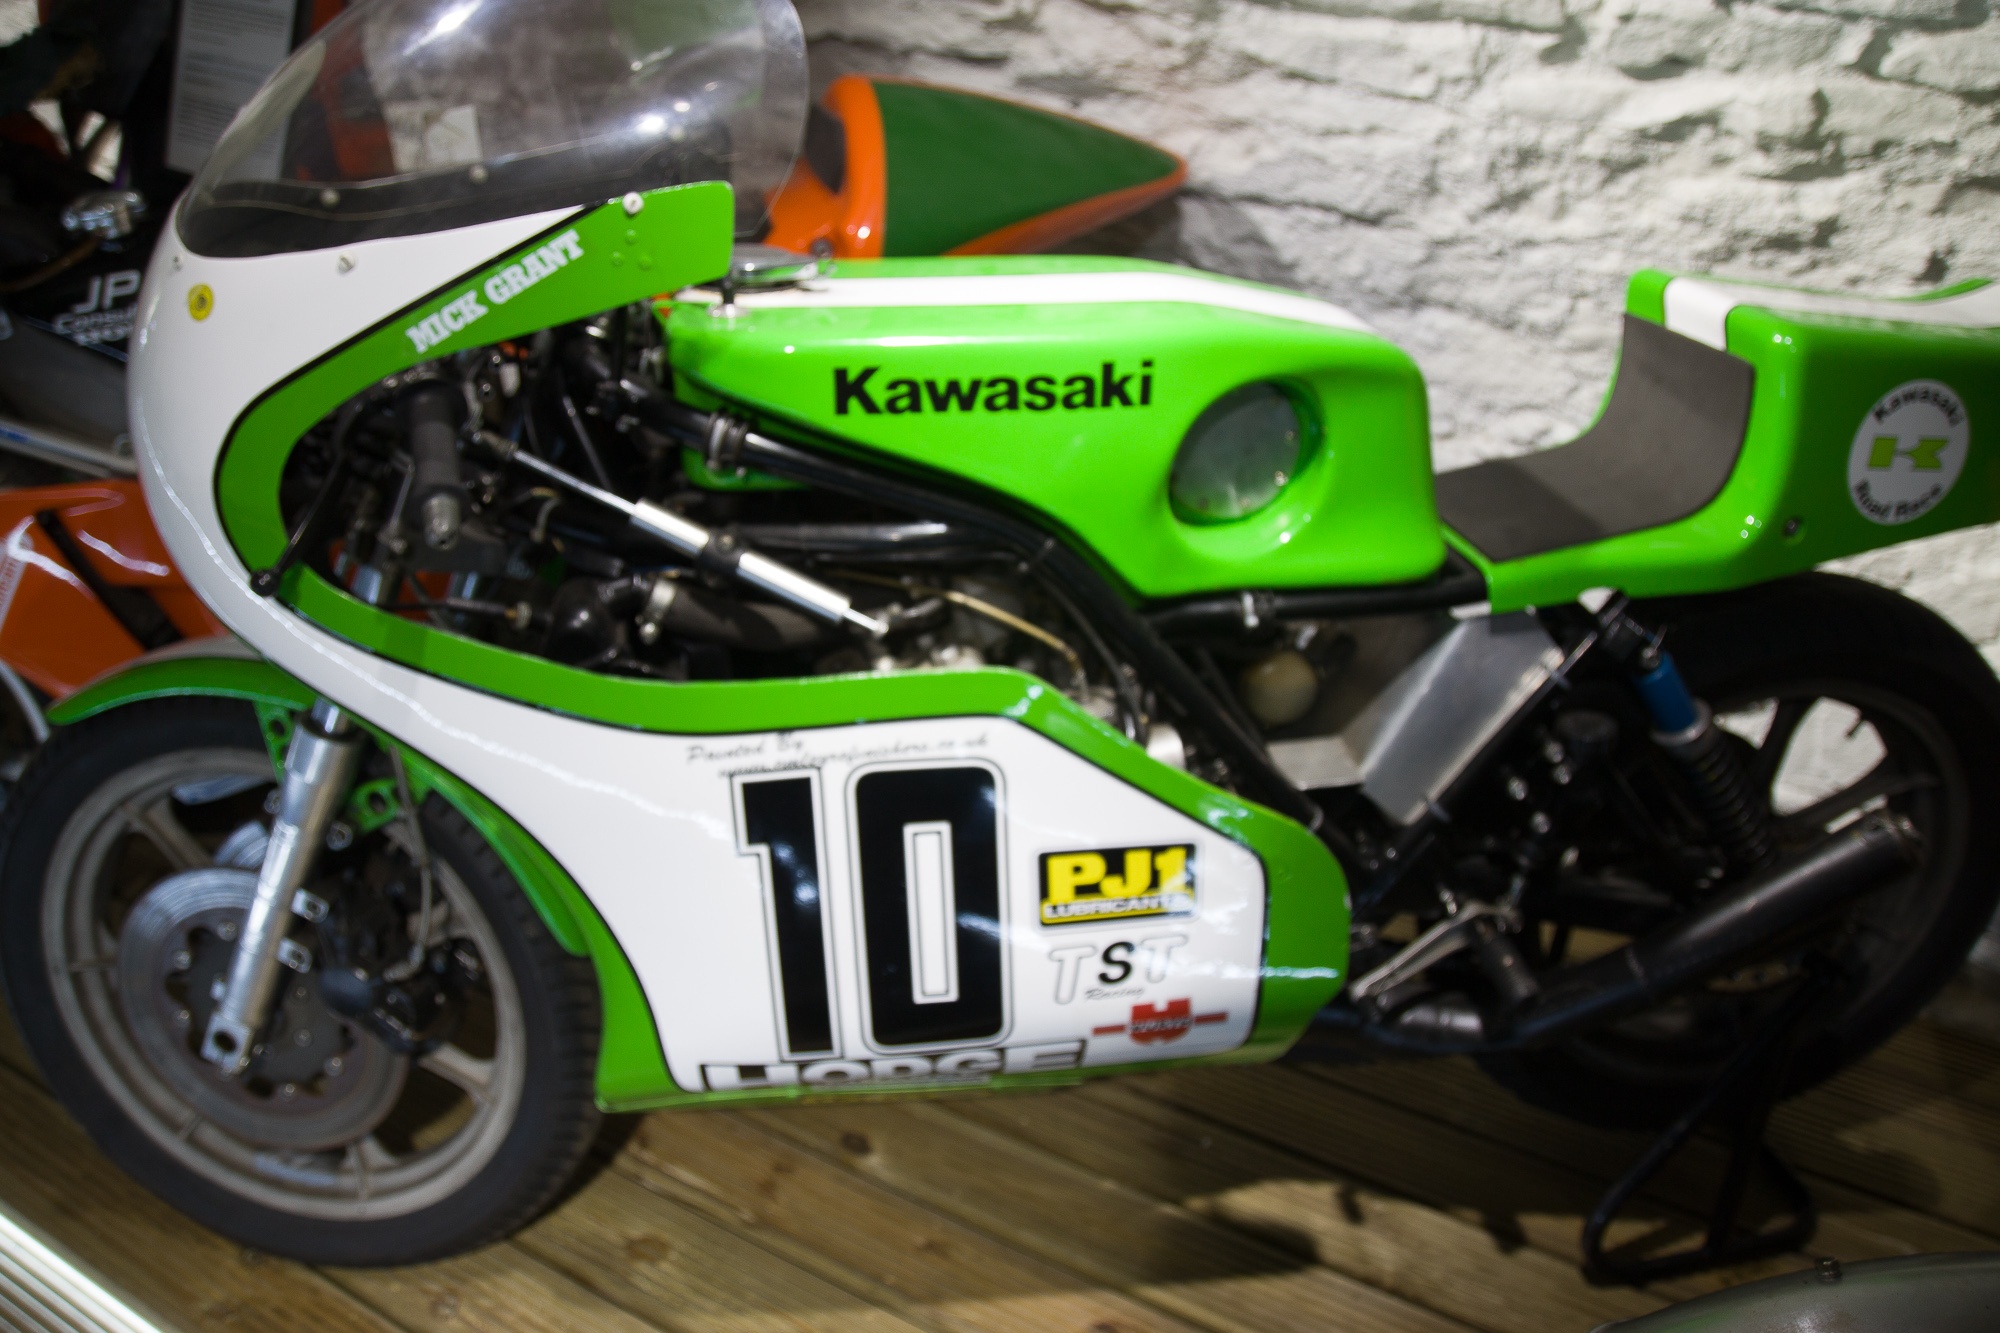 Kawasaki Daytona 1976 KR 750